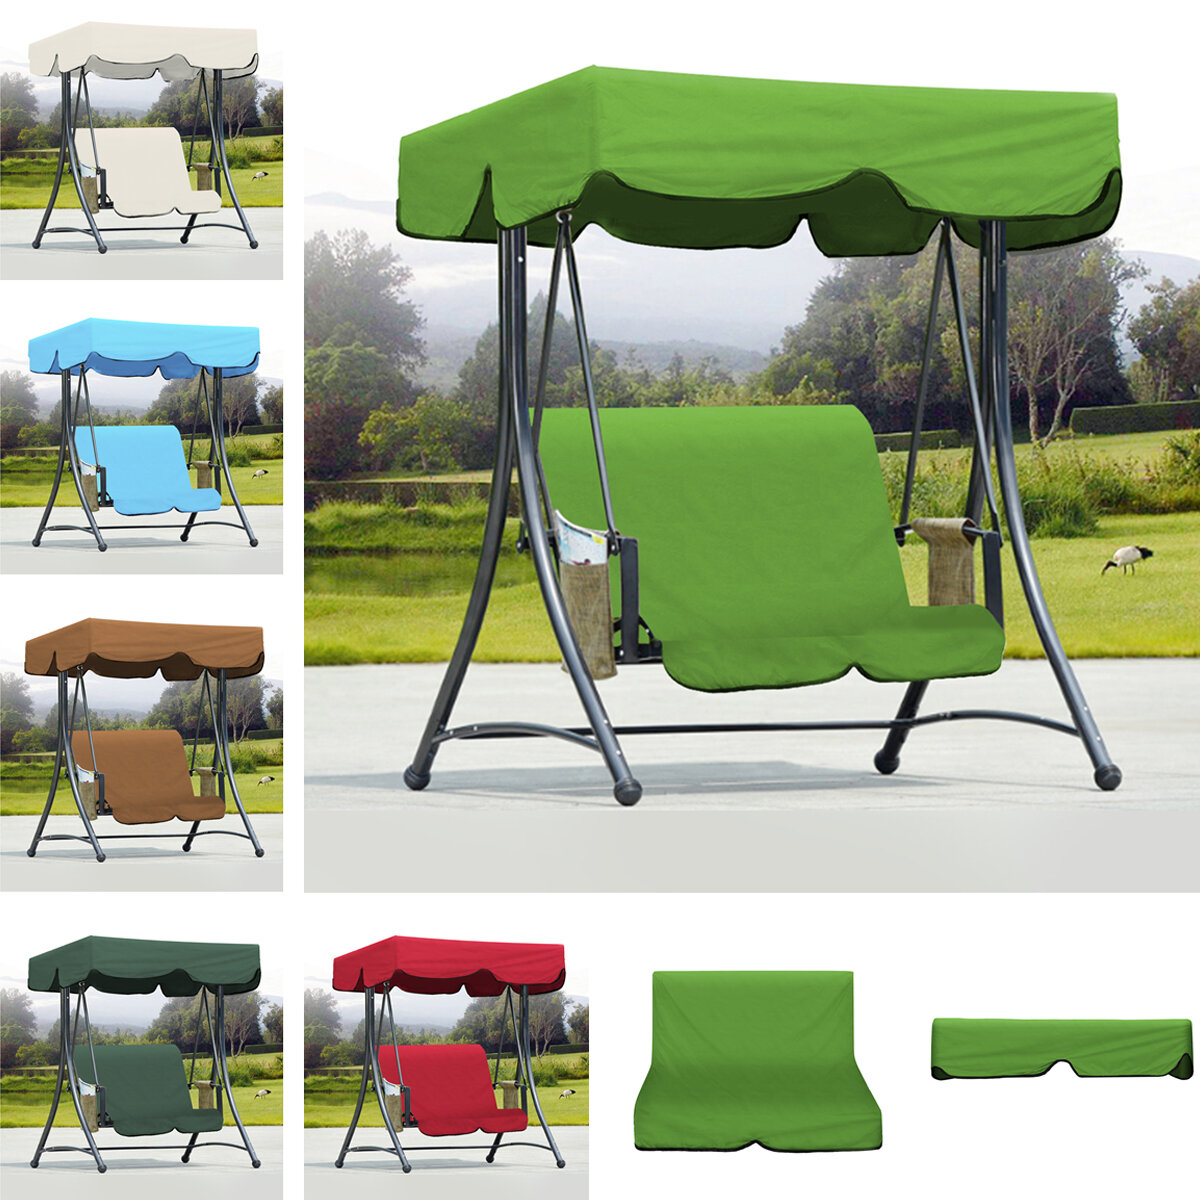 Outdoor?tuin?Swing?Bench?hangmat?Canopy Waterdicht Top Cover zonnescherm + 2-zits stoel Cover